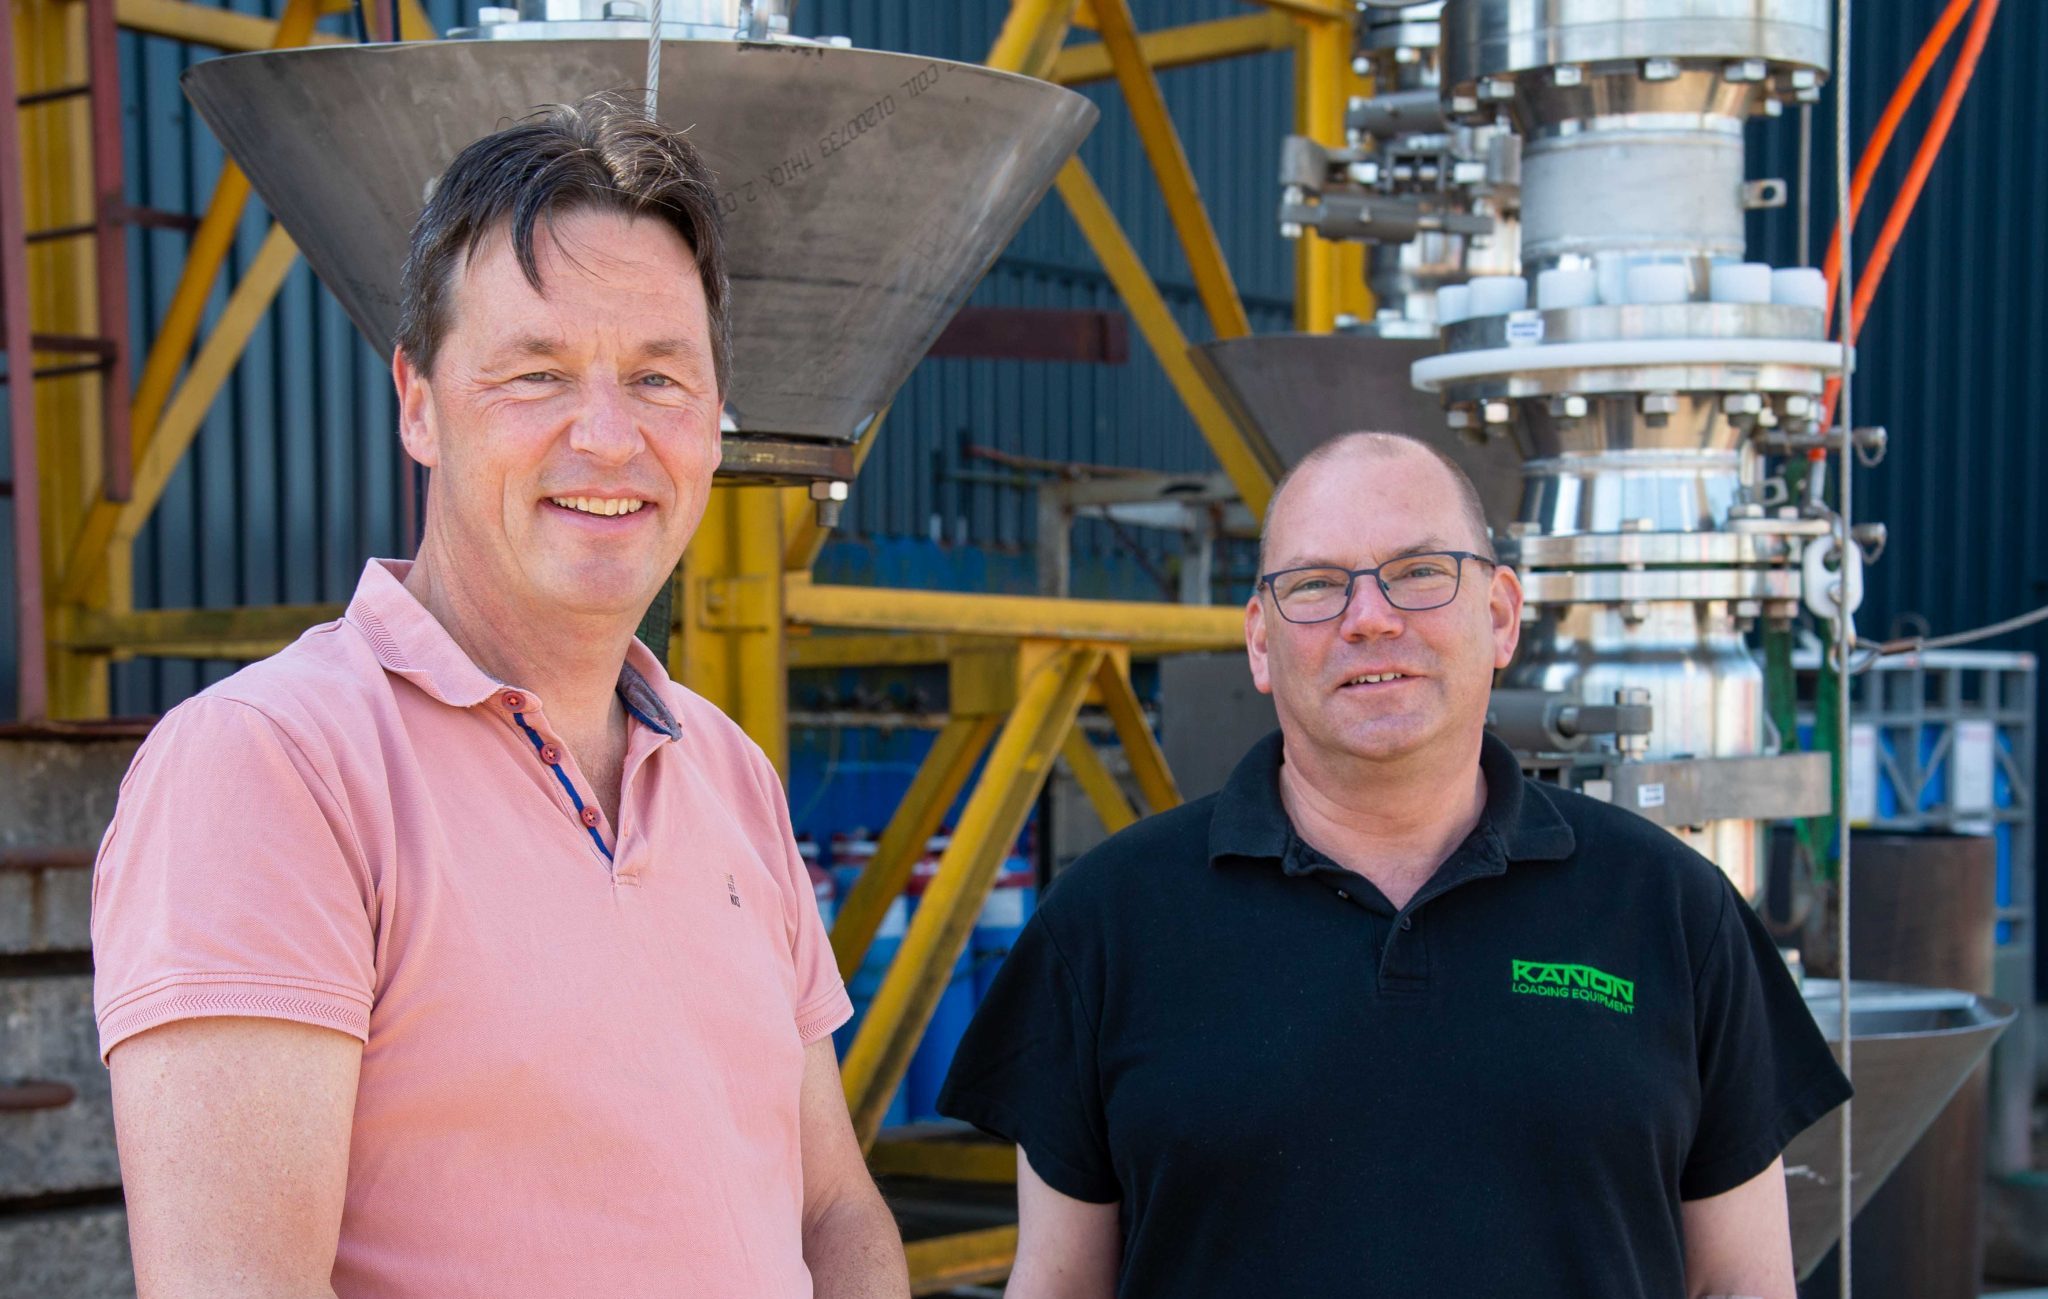 Van Wijk-directeur Ruud Gommers en Marcel van Buuren, directeur van medeontwikkelaar Kanon Loading Equipment. (Foto’s Bart Oosterveld)